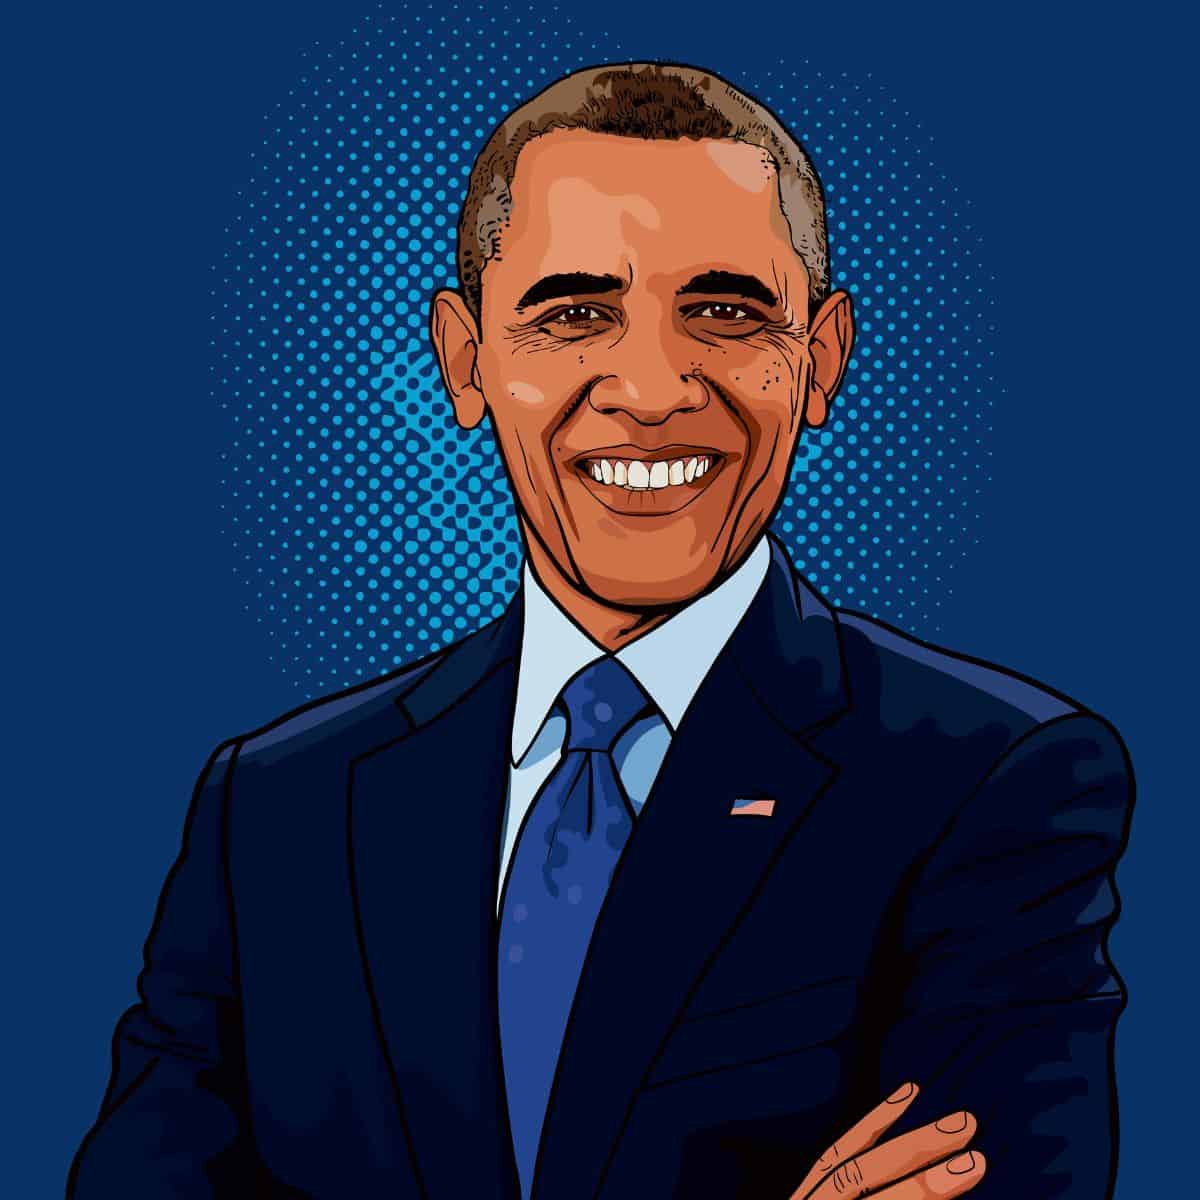 illustrated image of barack obama.